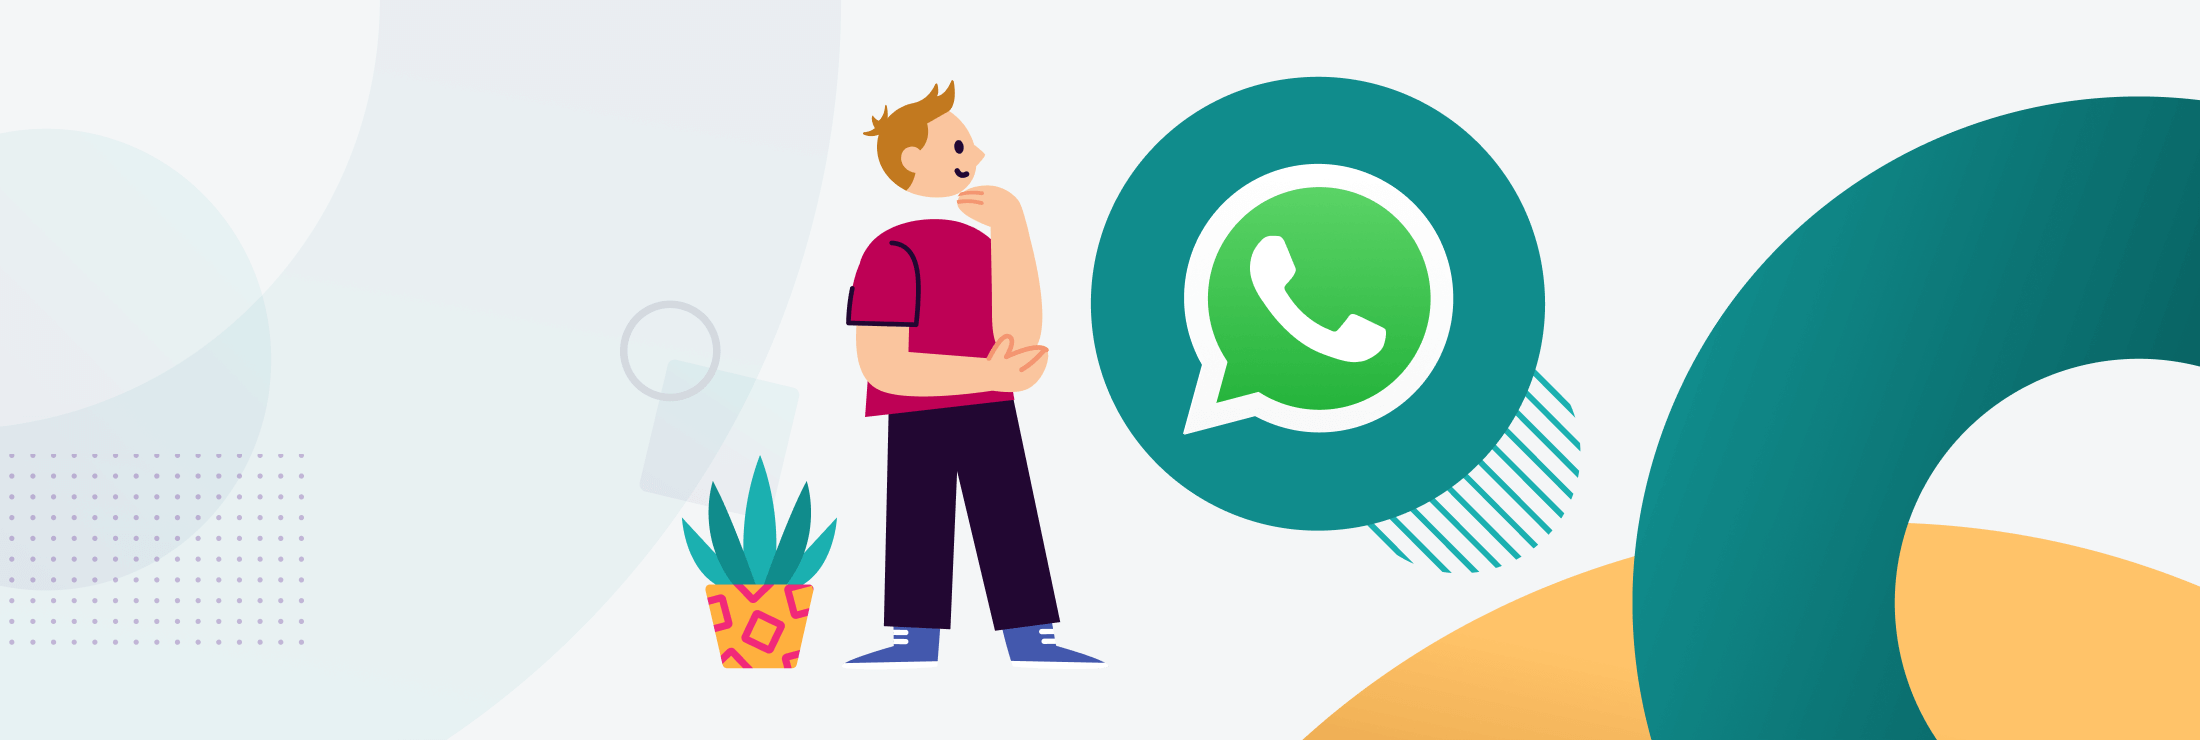 Ilustración sobre interacción con WhatsApp